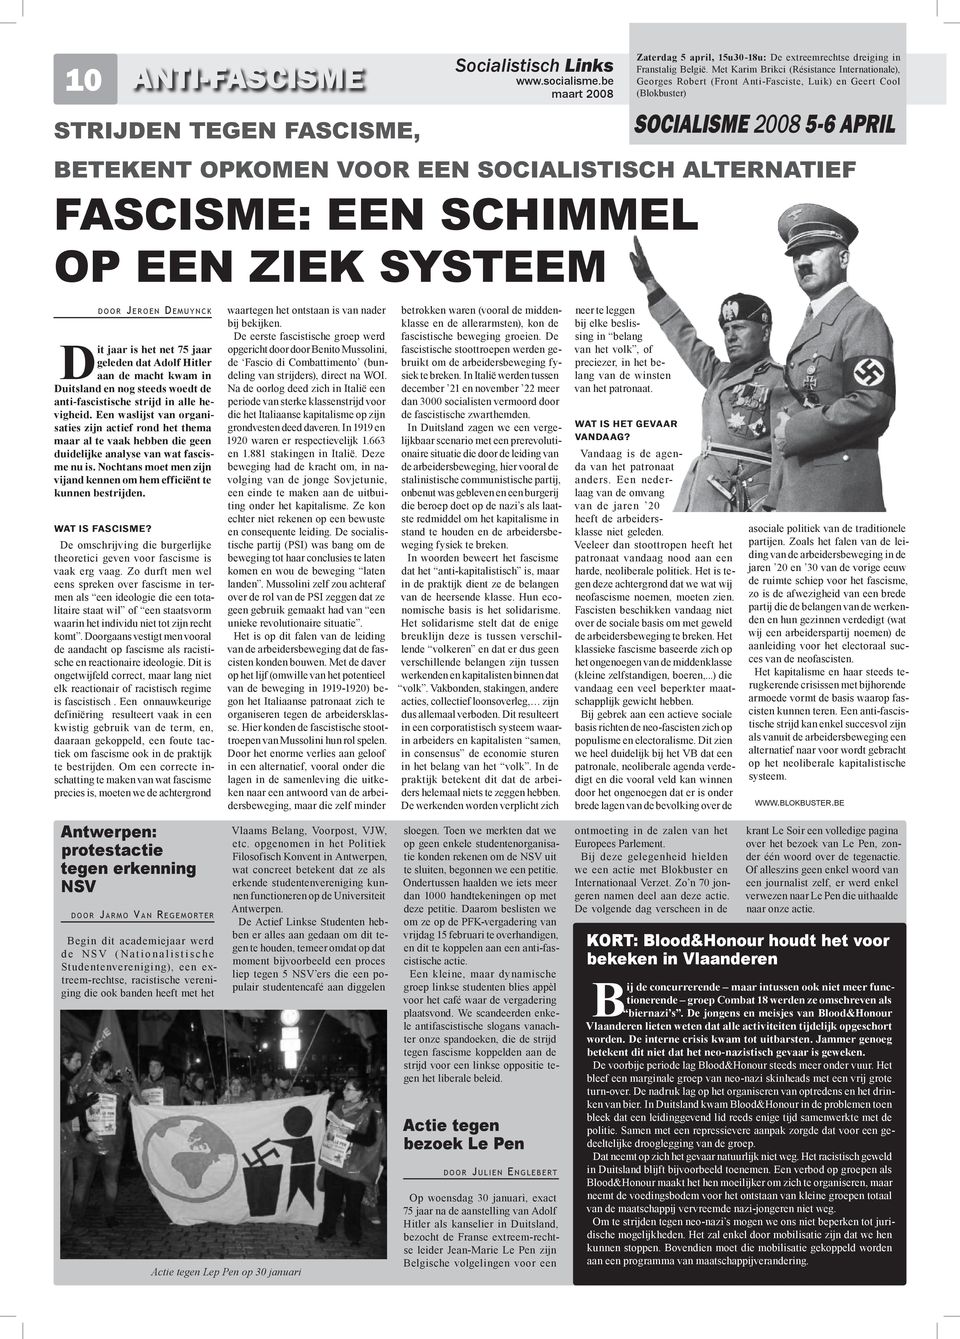 ziek systeem d o o r Jeroen Demuynck Dit jaar is het net 75 jaar geleden dat Adolf Hitler aan de macht kwam in Duitsland en nog steeds woedt de anti-fascistische strijd in alle hevigheid.